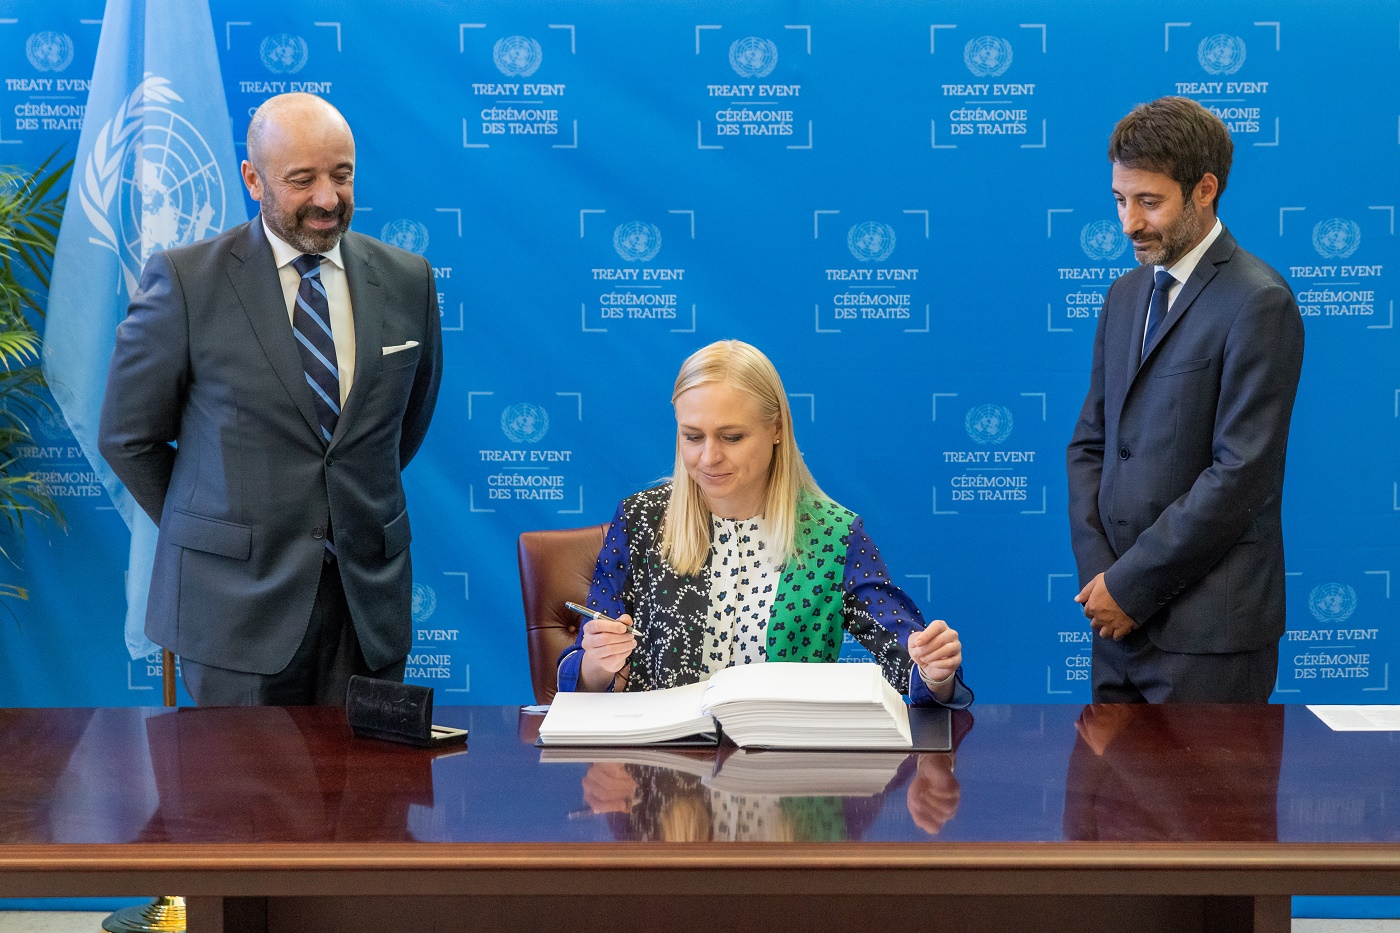 Ministeri Elina Valtonen istuu pöydän ääressä kynä kädessään ja edessään avattu kirja. Kaksi mieshenkilöä seisoo pöydän molemmin puolin. Taustalla YK-lippu.